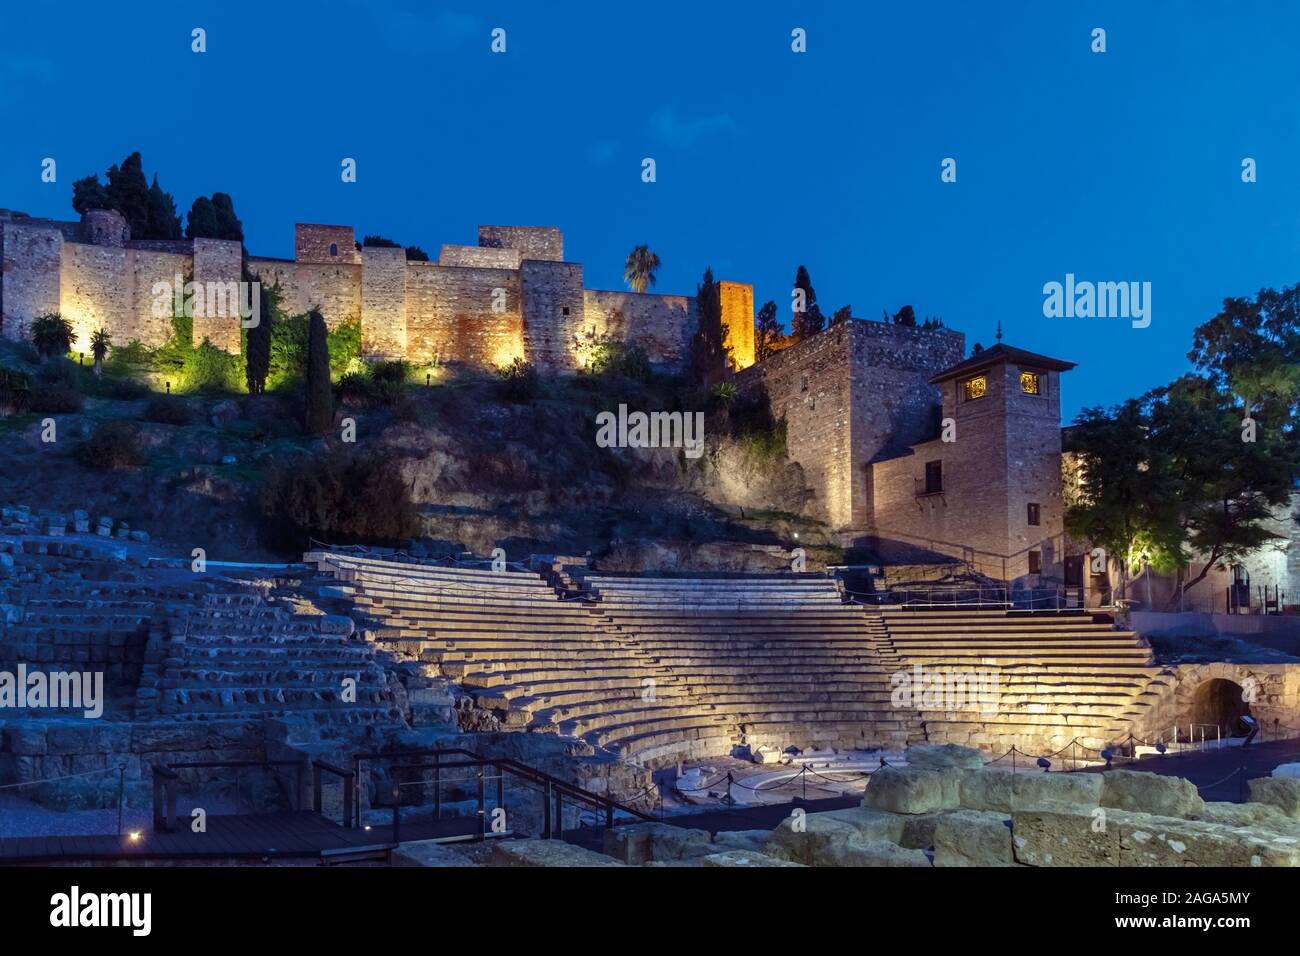 Teatro romano e la alcazaba moresca, o fortezza, Malaga, provincia di Malaga, Costa del Sol, Andalusia, Spagna meridionale. Foto Stock